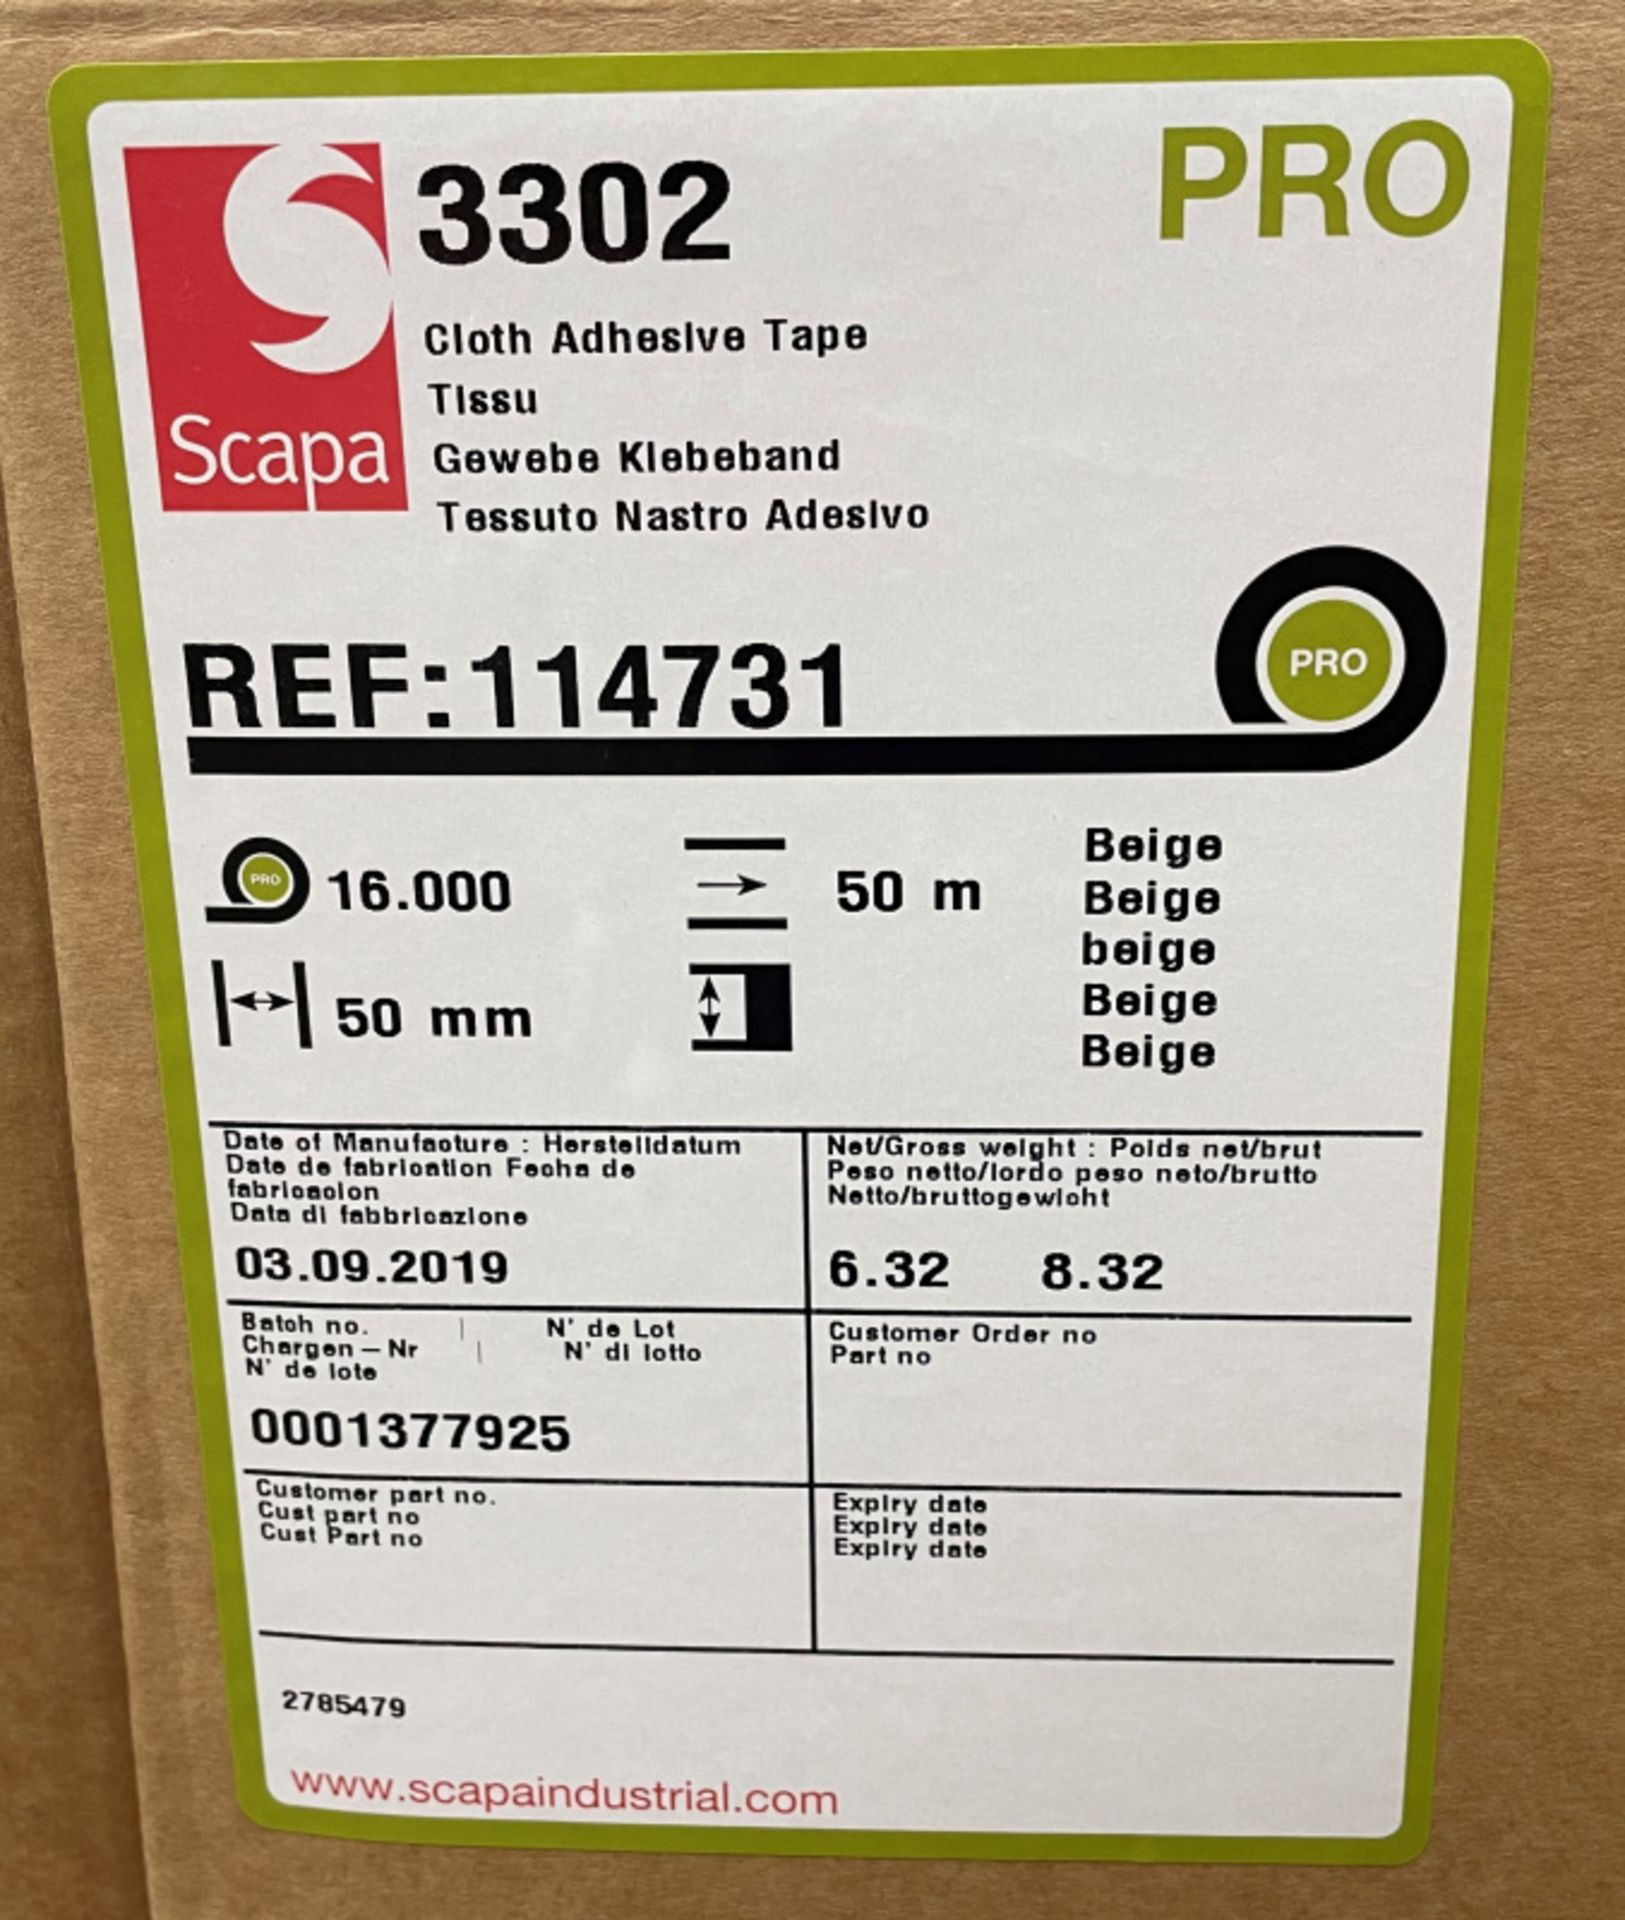 Scapa 3302 Pro Tape - Buff Tan/Beige - 50mm x 50M rolls - 16 rolls per box - 28 boxes & 1x box of 4 - Image 4 of 5